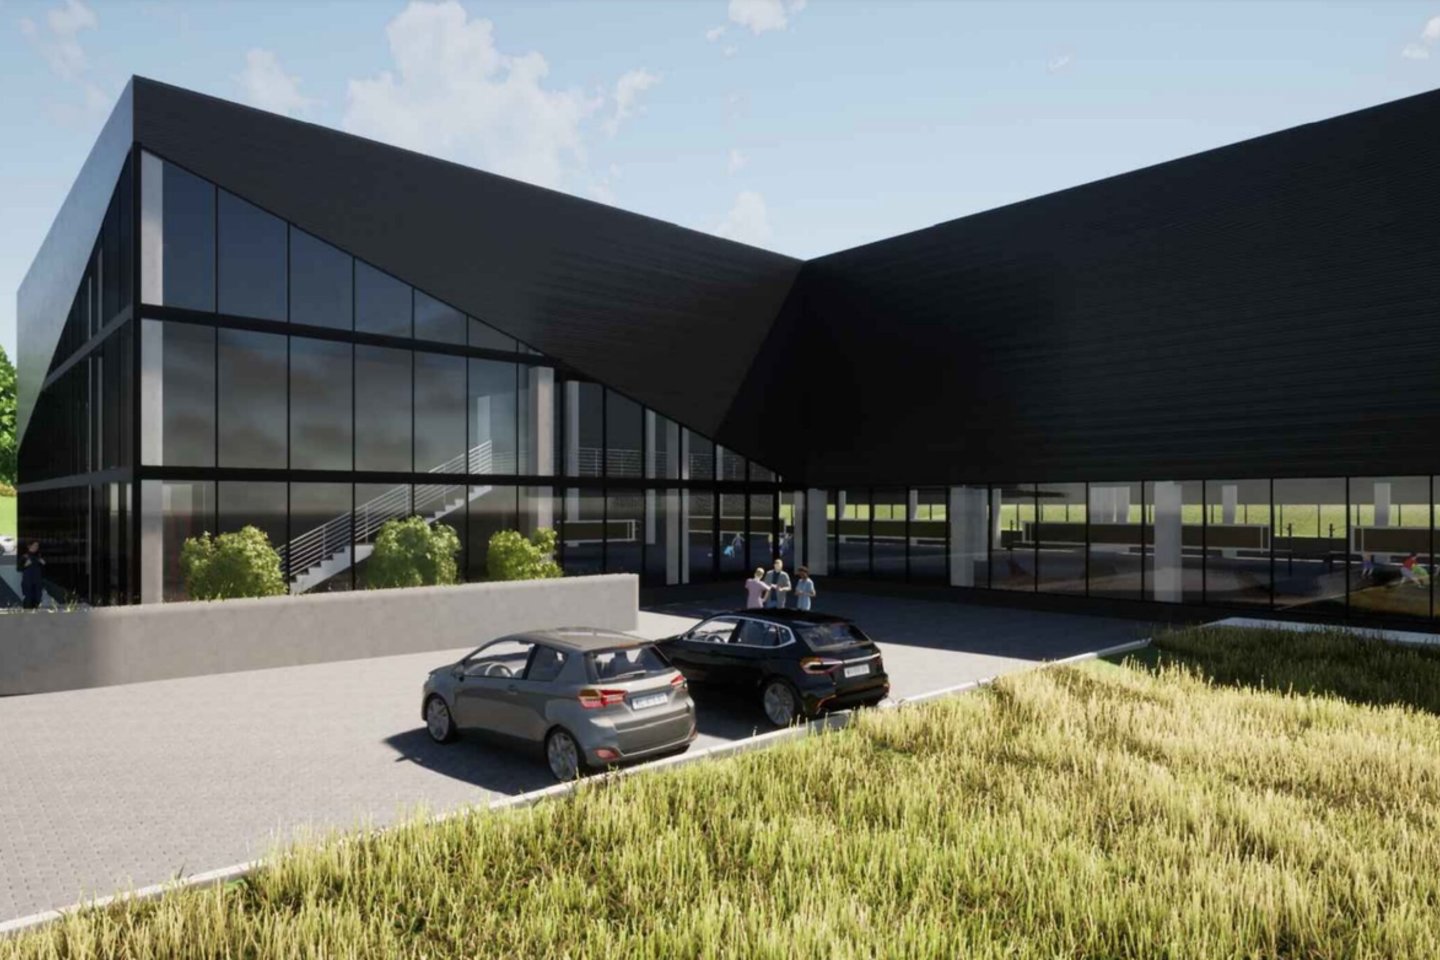 Tinklinio sporto areną norima statyti Žemuosiuose Paneriuose, vietoj buvusių metalinių garažų komplekso.<br>UAB „Postforma“ vizual.